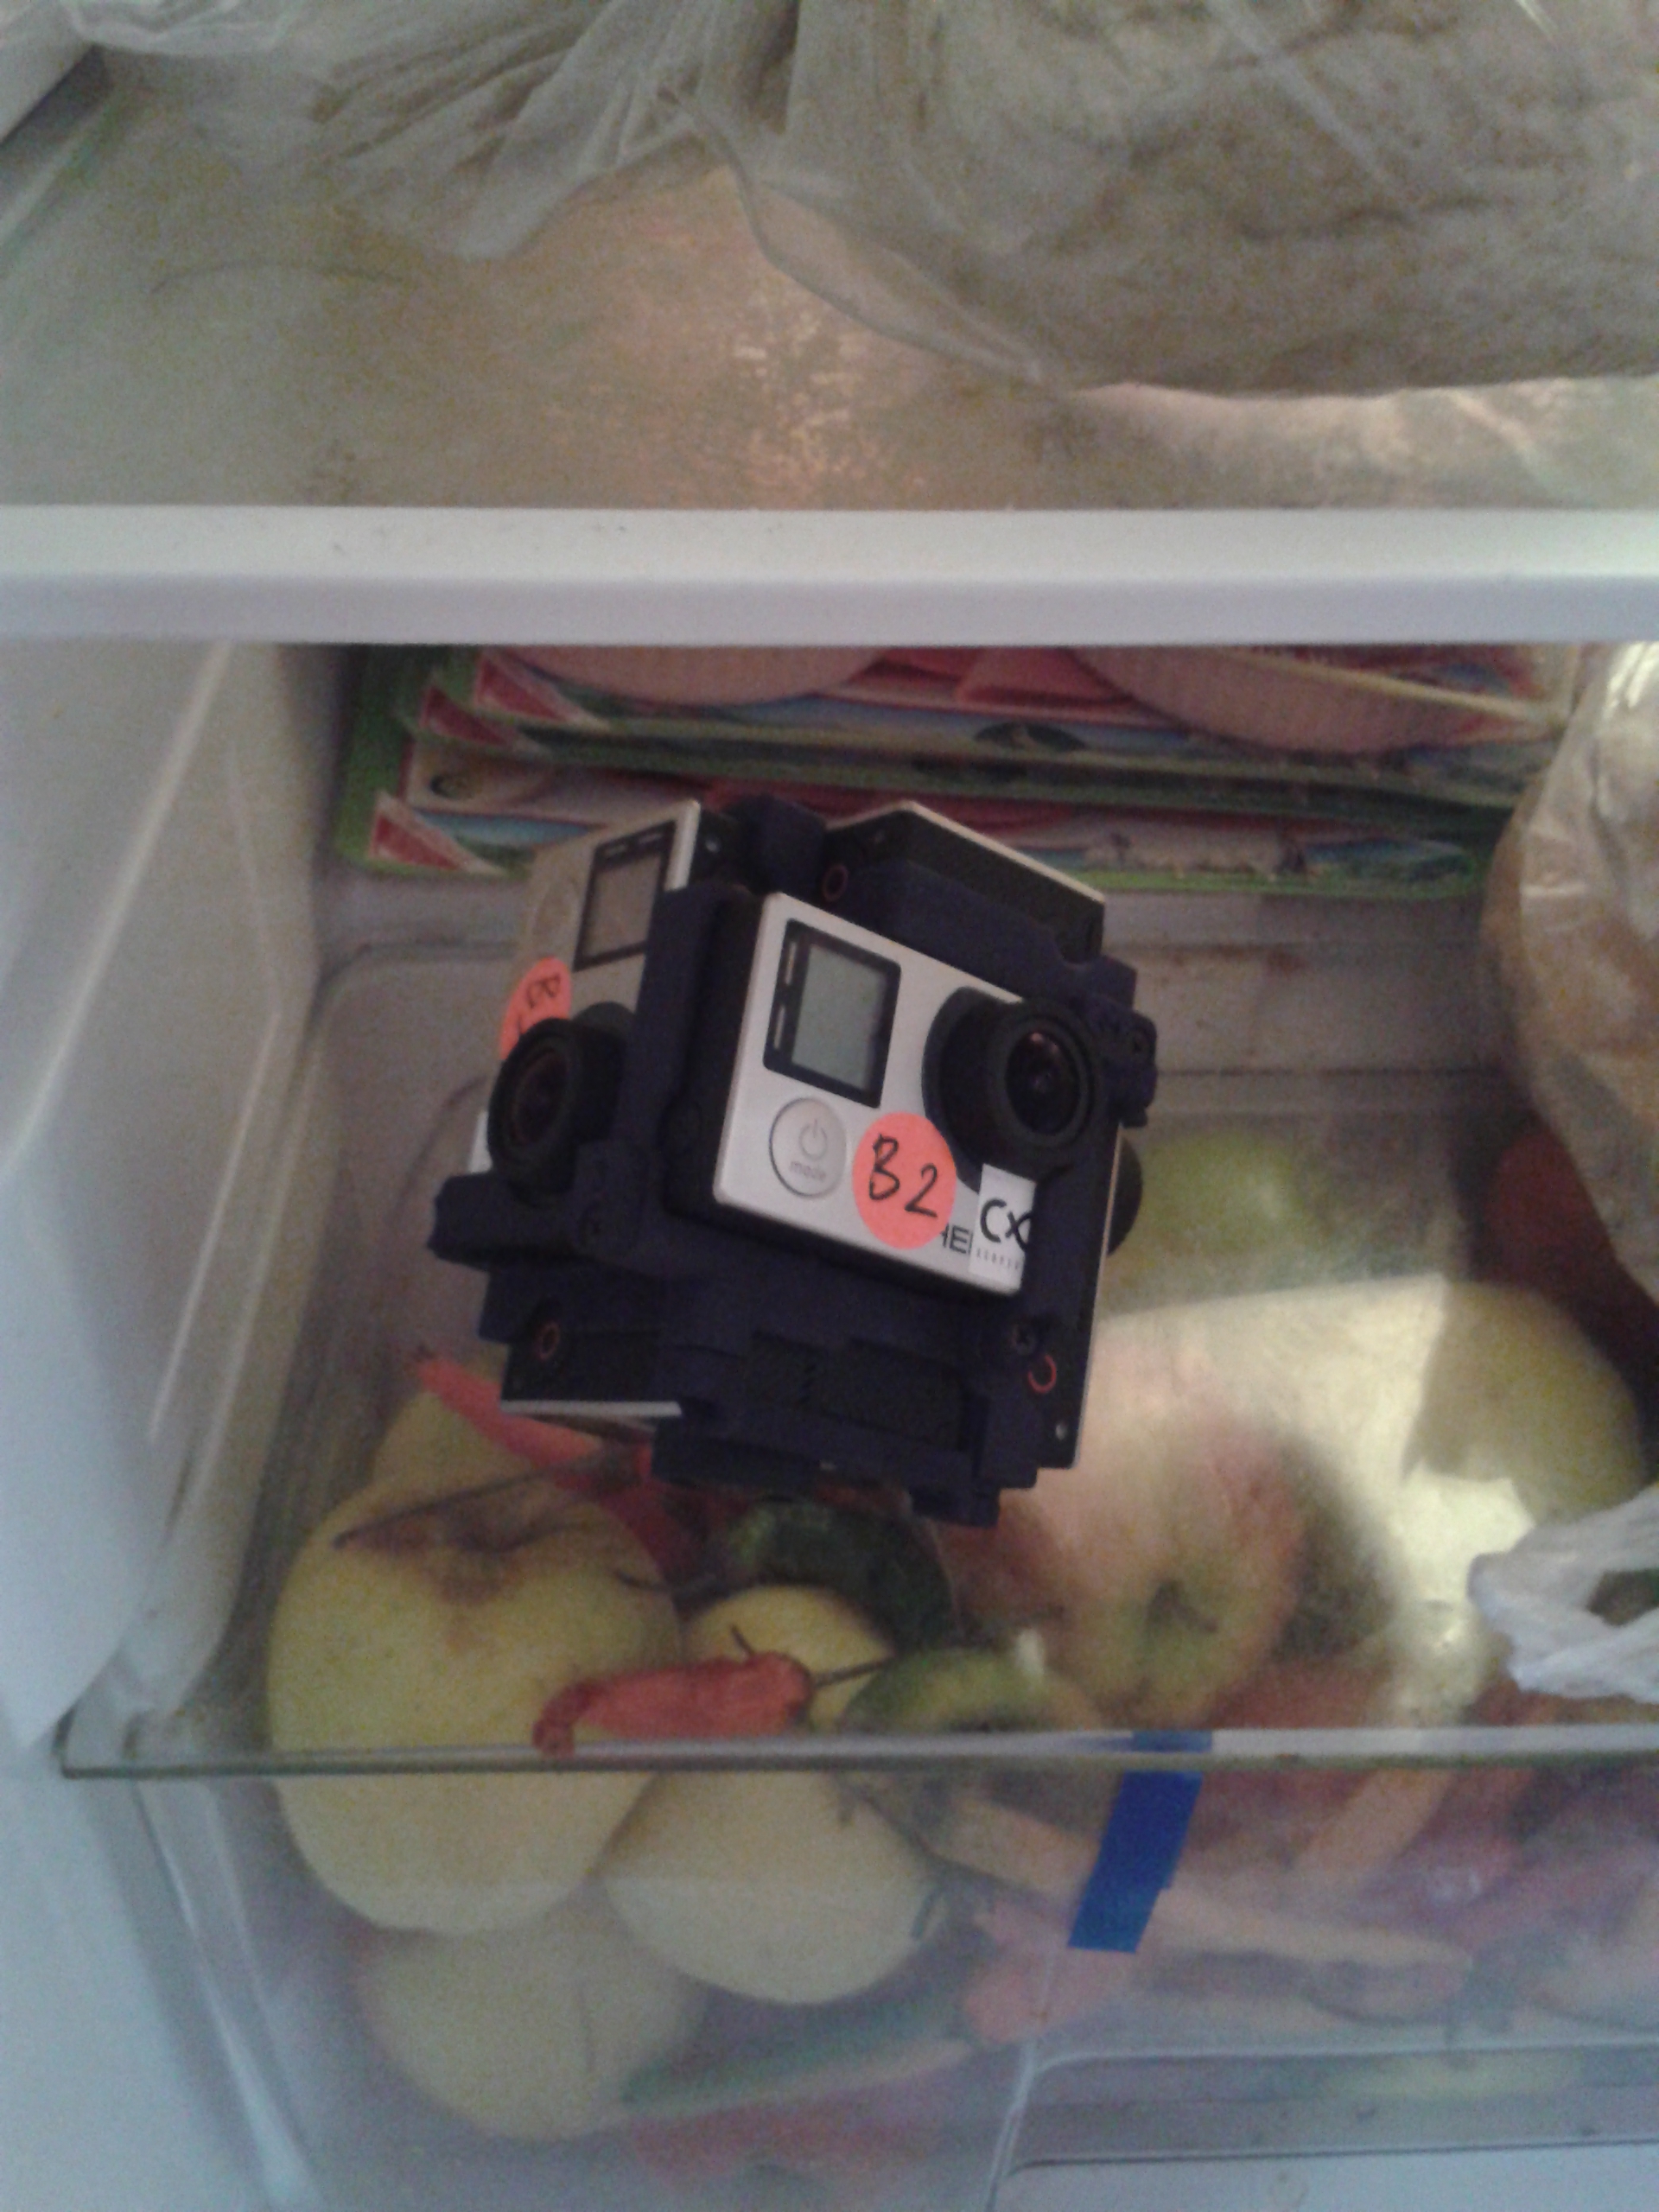 De kubus met GoPro-camera's ligt om af te koelen op de glasplaat boven de groentenla in de koelkast.